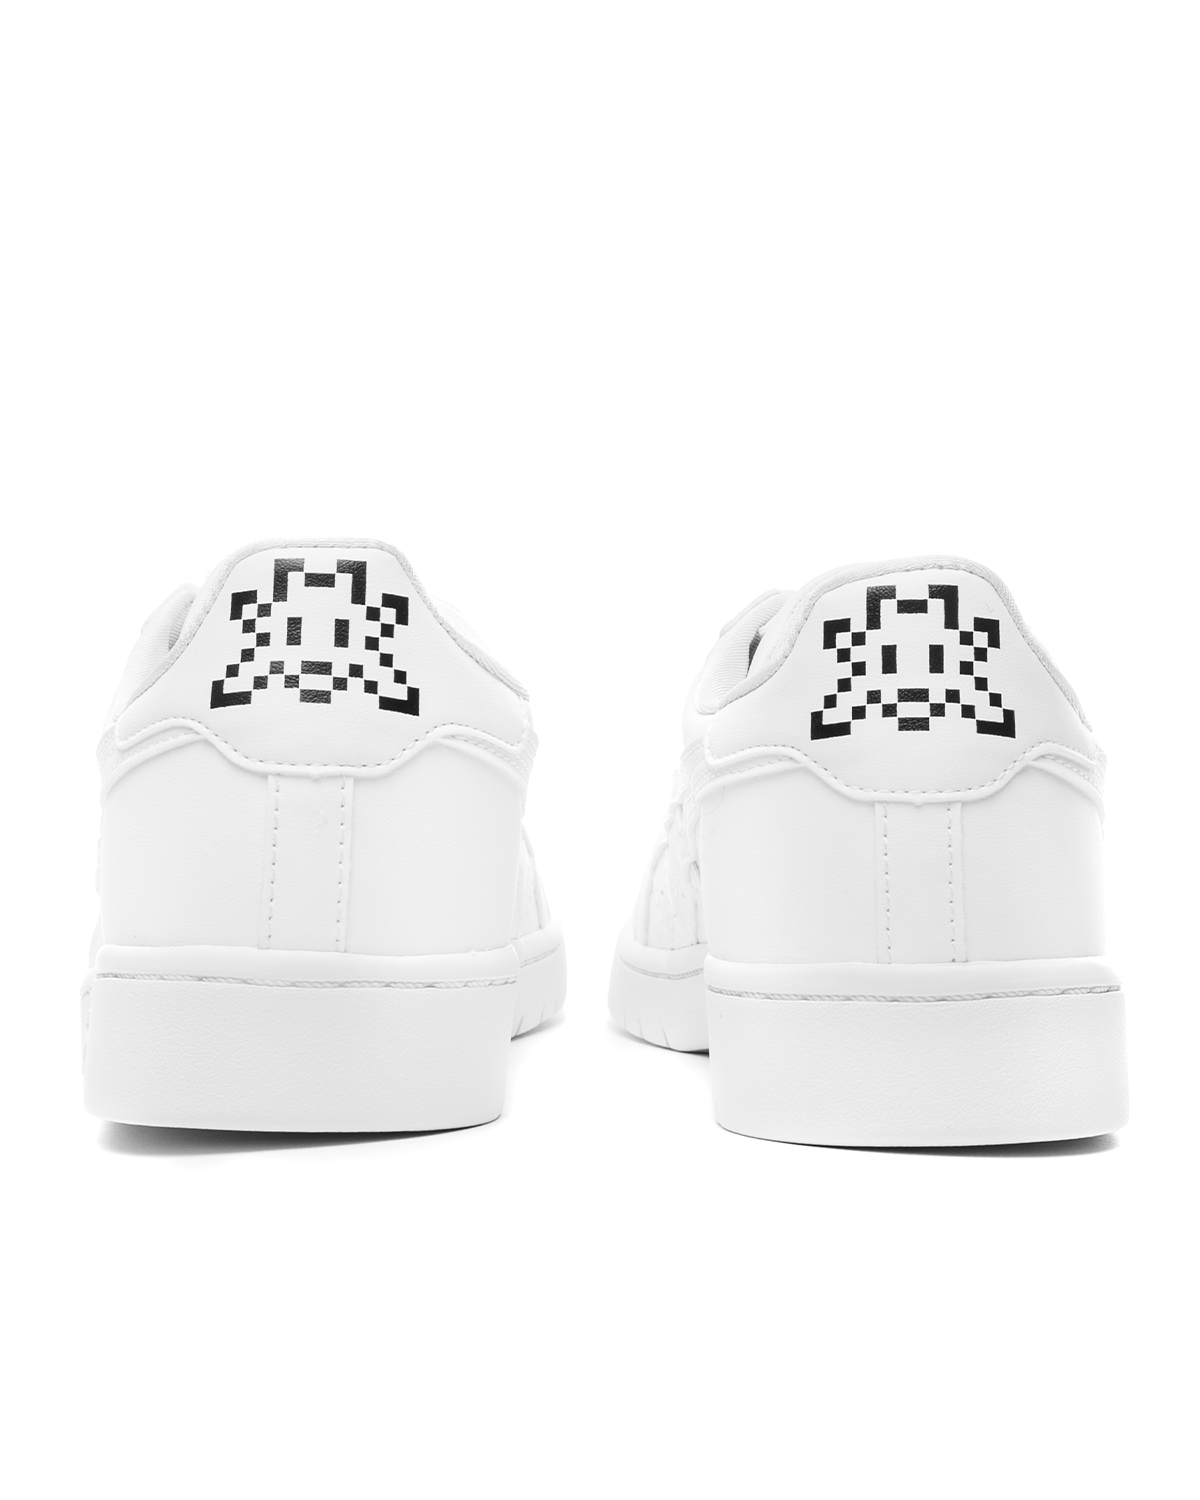 CDG x Asics Japan S Sneakers White